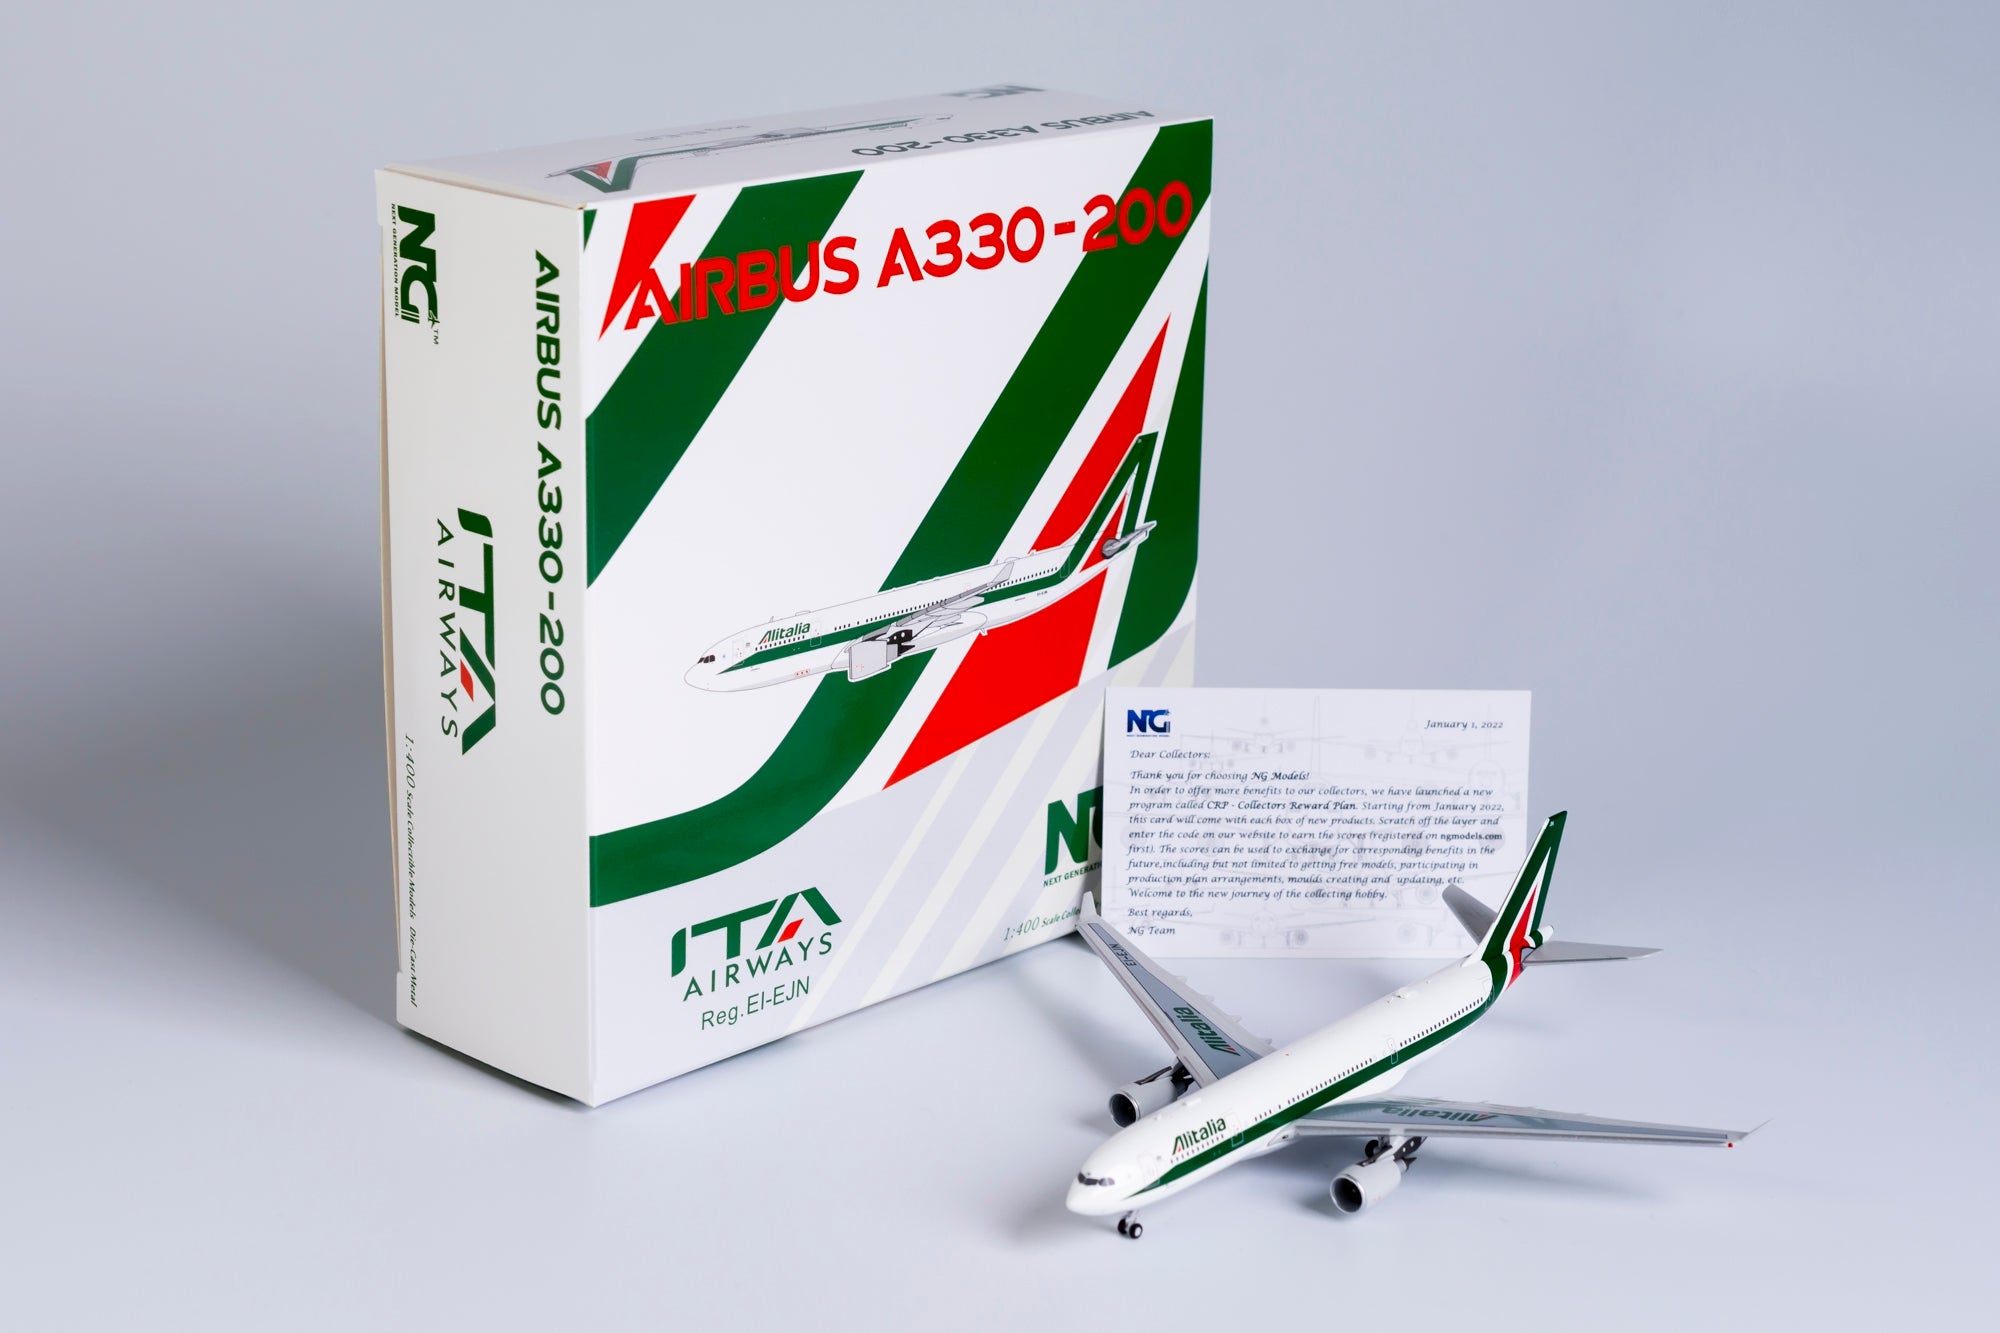 1:400 NG Models ITA Airways (Alitalia) Airbus A330-200 